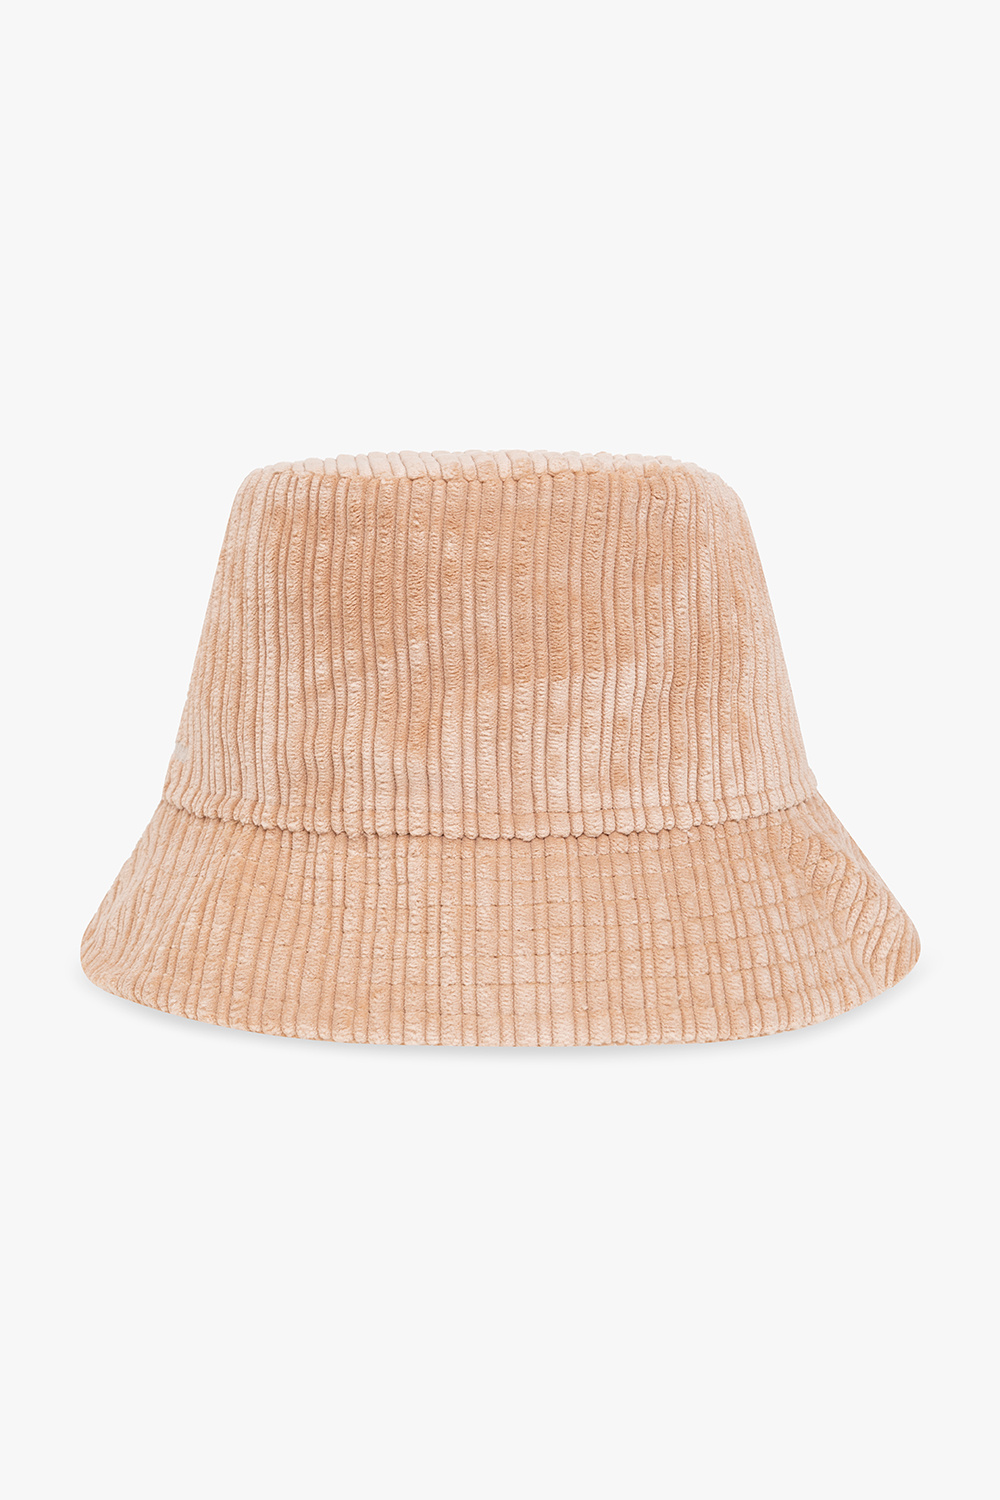 Isabel Marant ‘Haleyh’ corduroy bucket hat